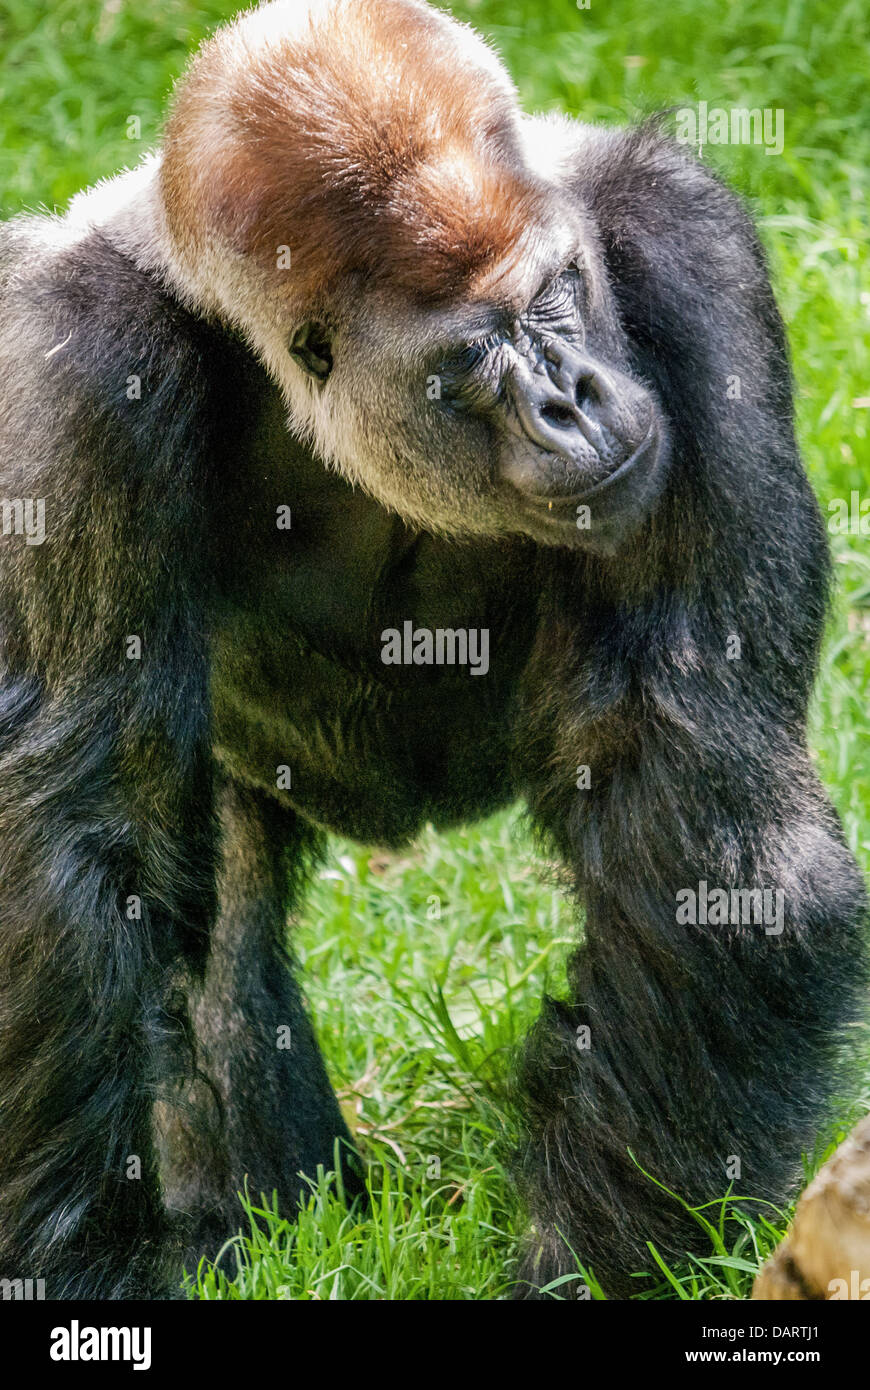 Rigo, a silverback gorilla in an Australian zoo Stock Photo